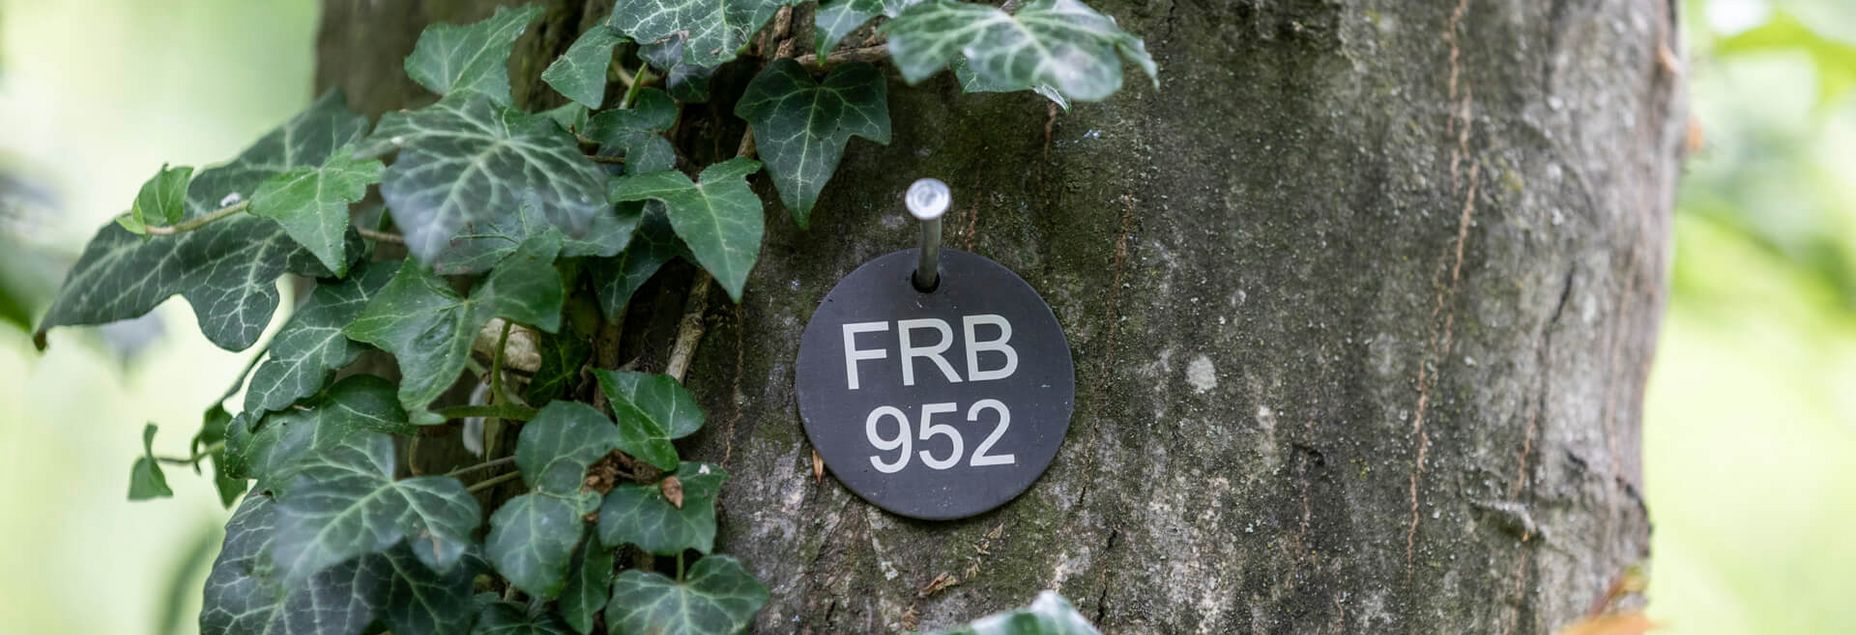 FRB 952 - Plakette